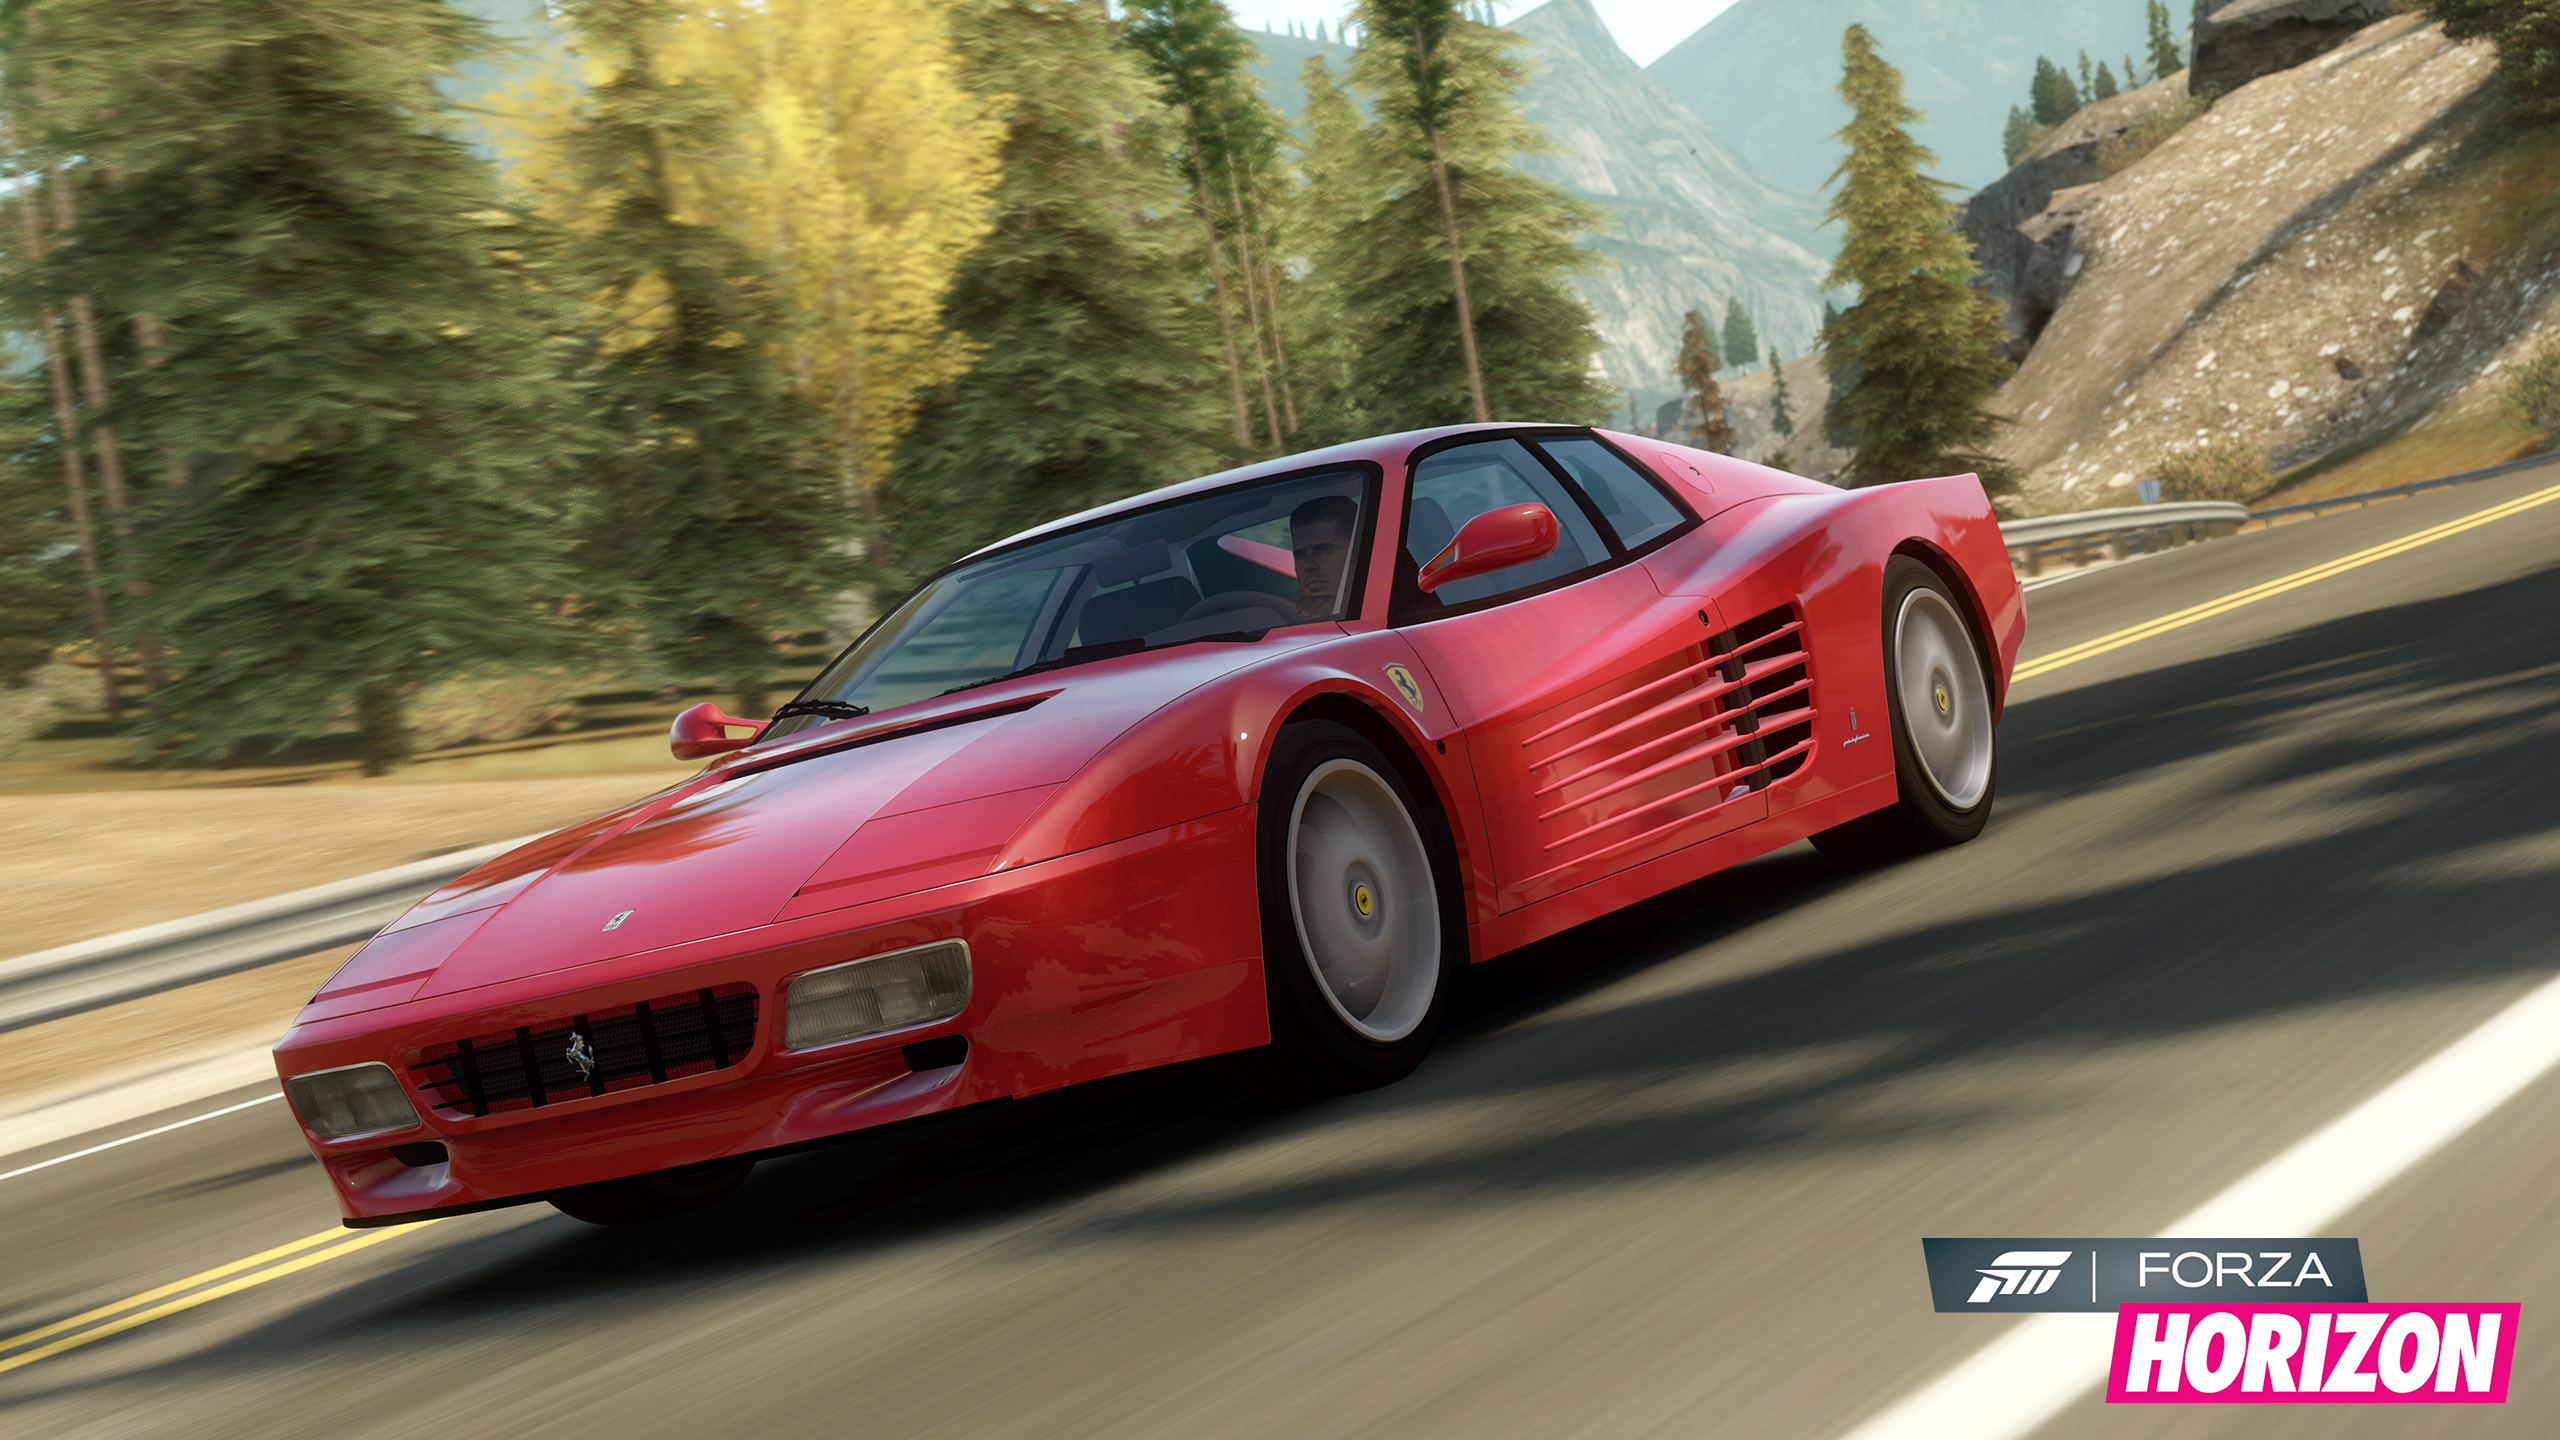 Ferrari forza horizon. Forza Horizon 1. Ferrari 512 tr Forza Horizon 4. Forza Horizon 4 Скриншоты. Ferrari 512 m Forza Horizon.